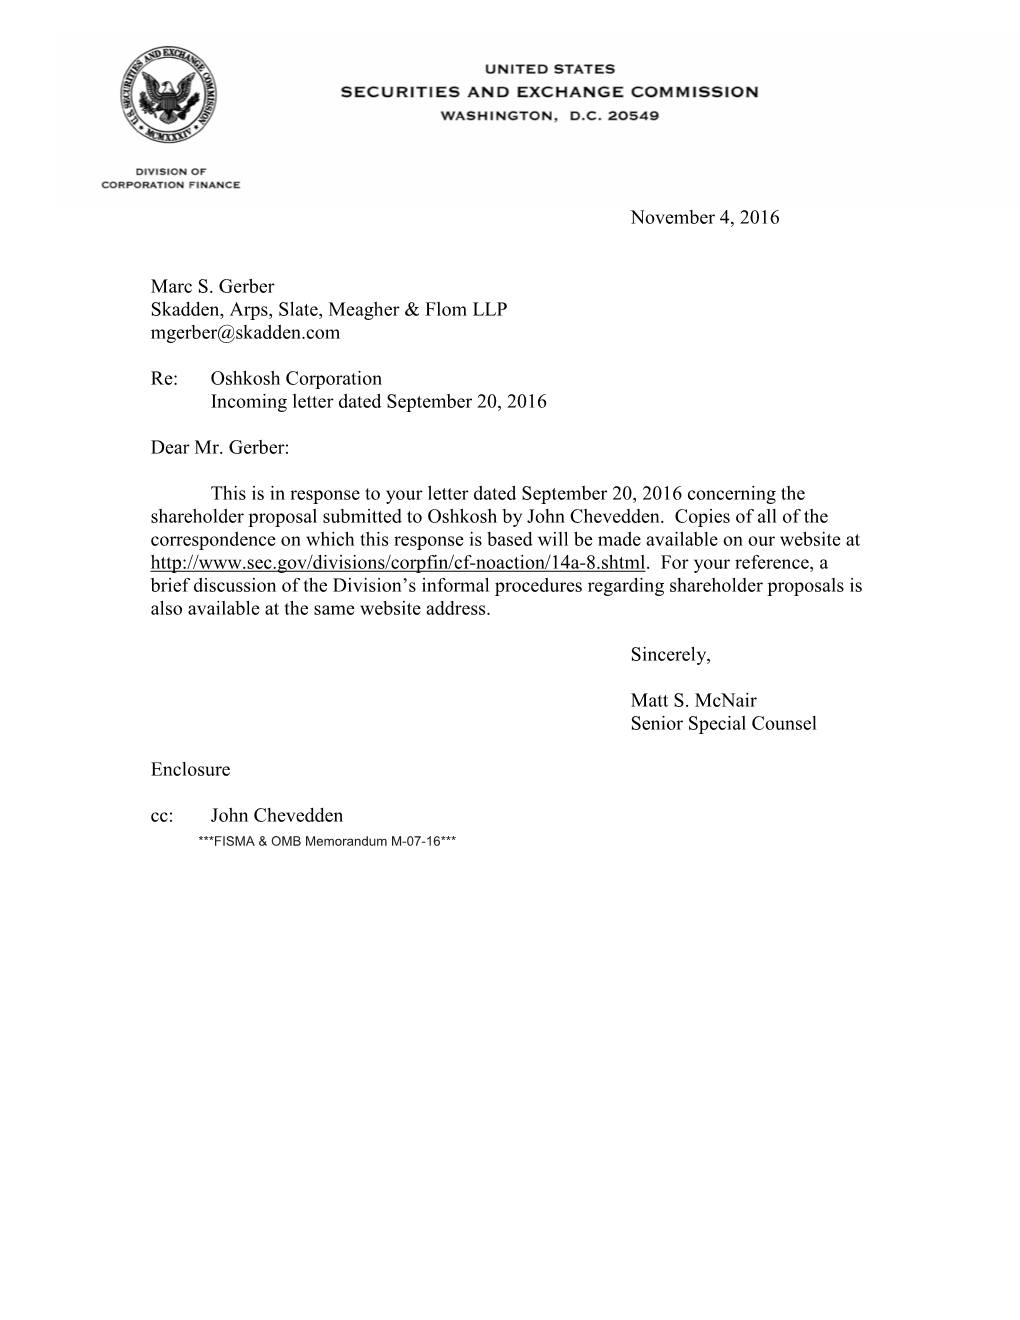 Oshkosh Corporation Incoming Letter Dated September 20, 2016